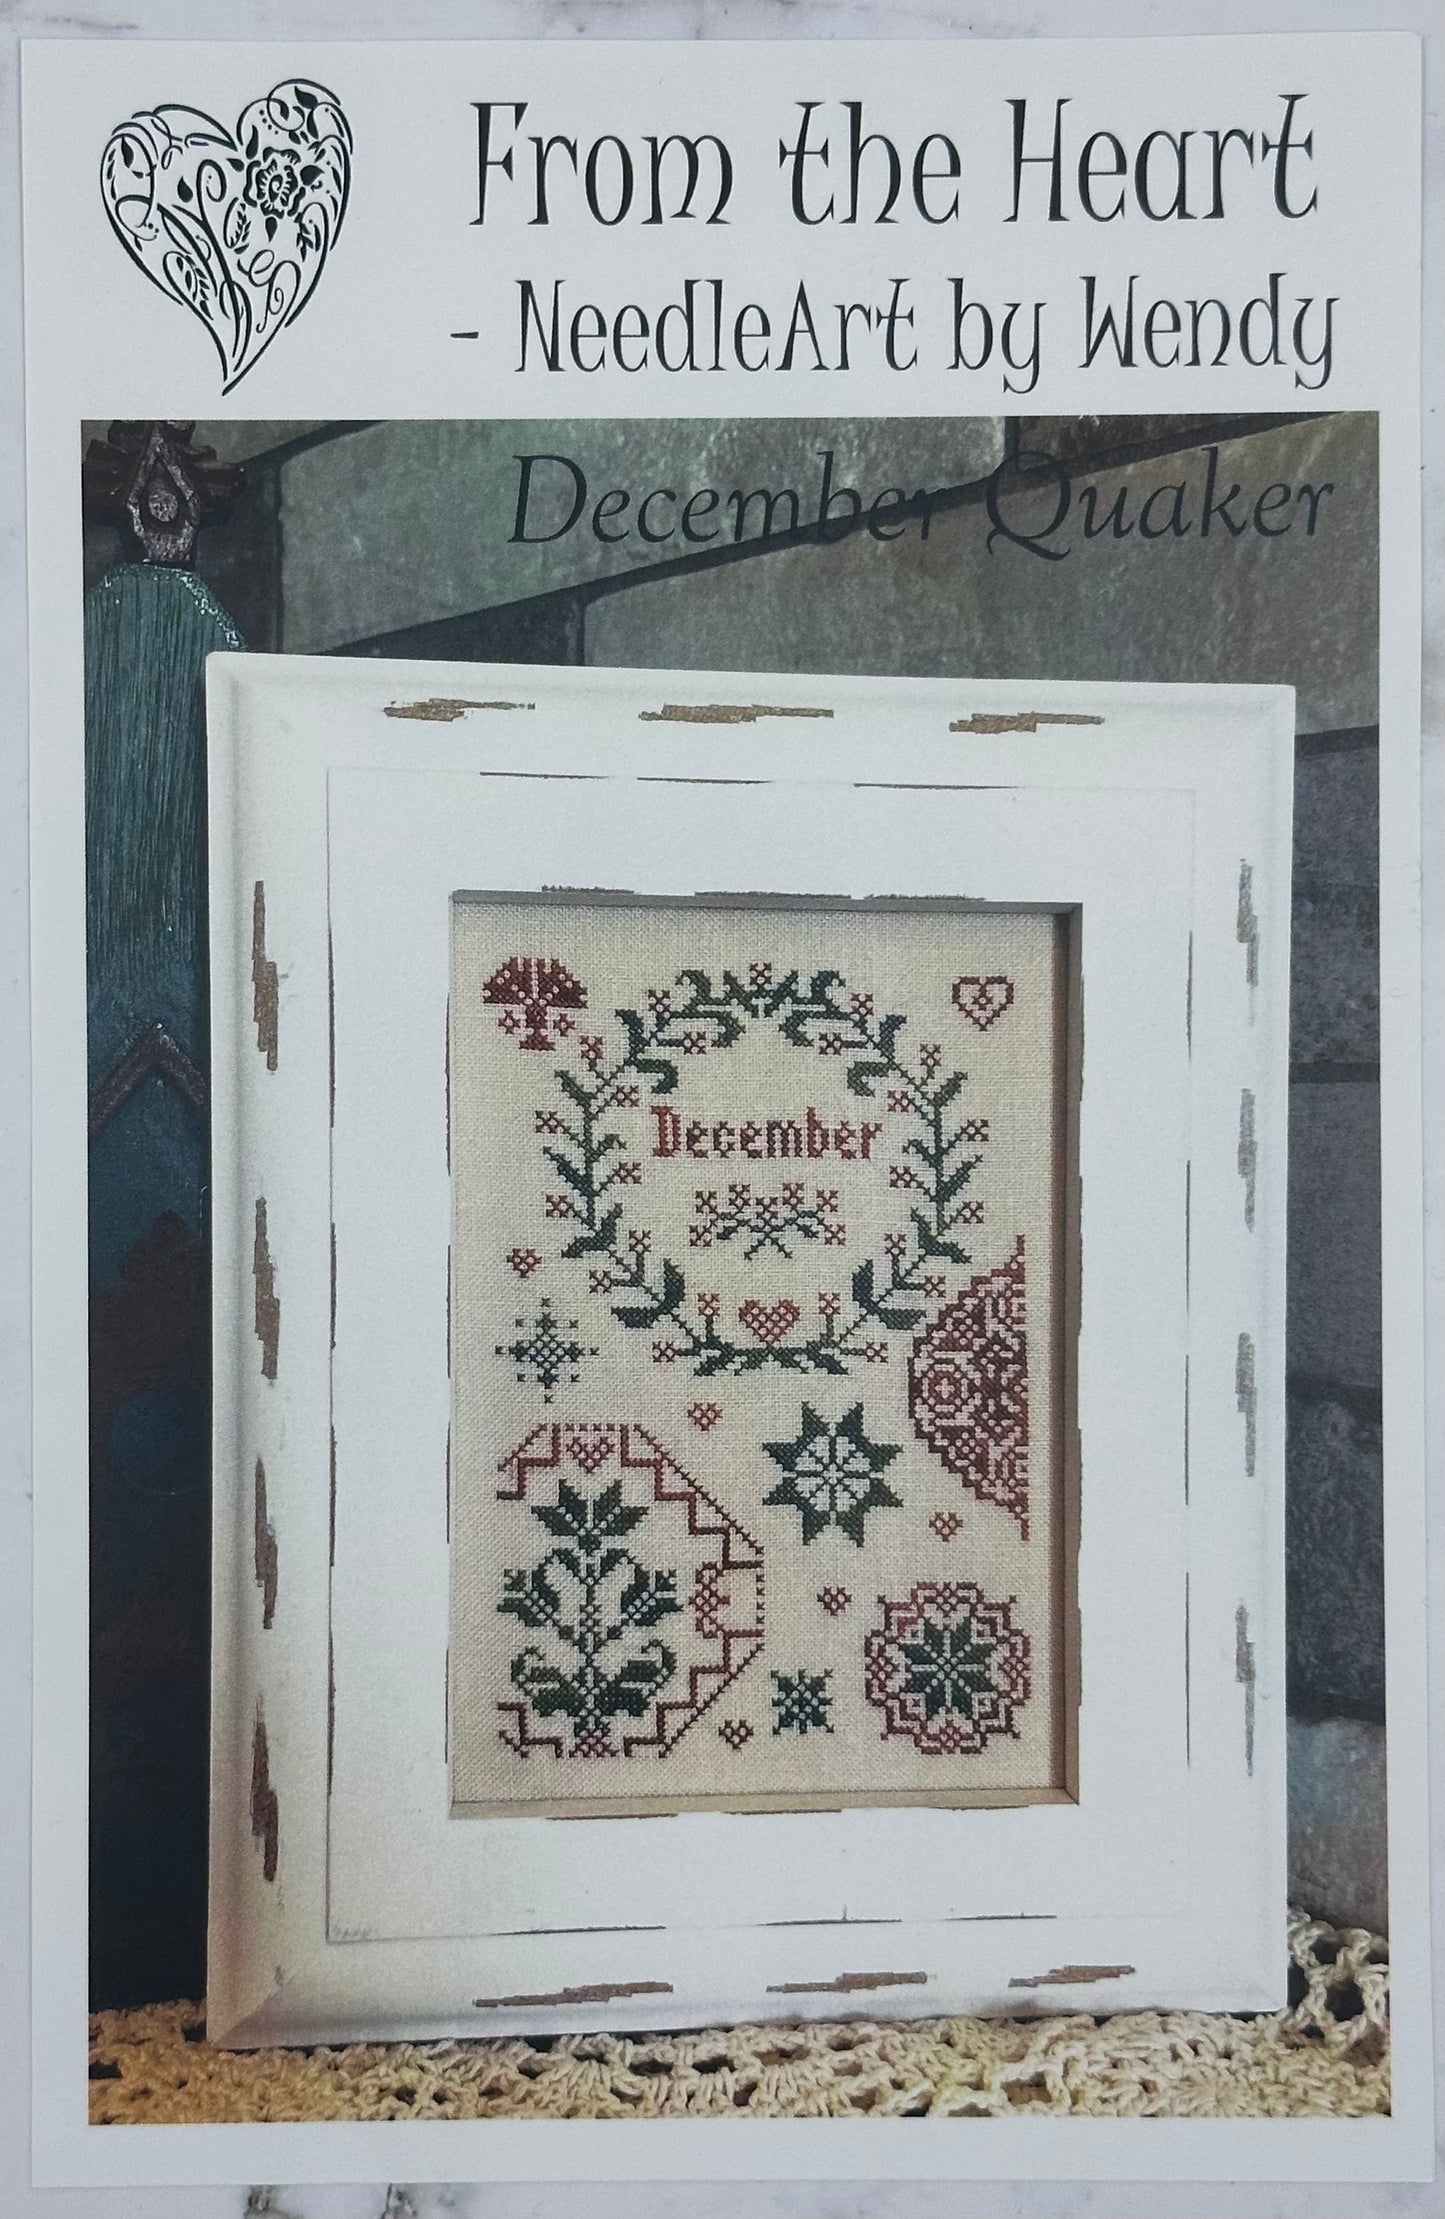 December Quaker